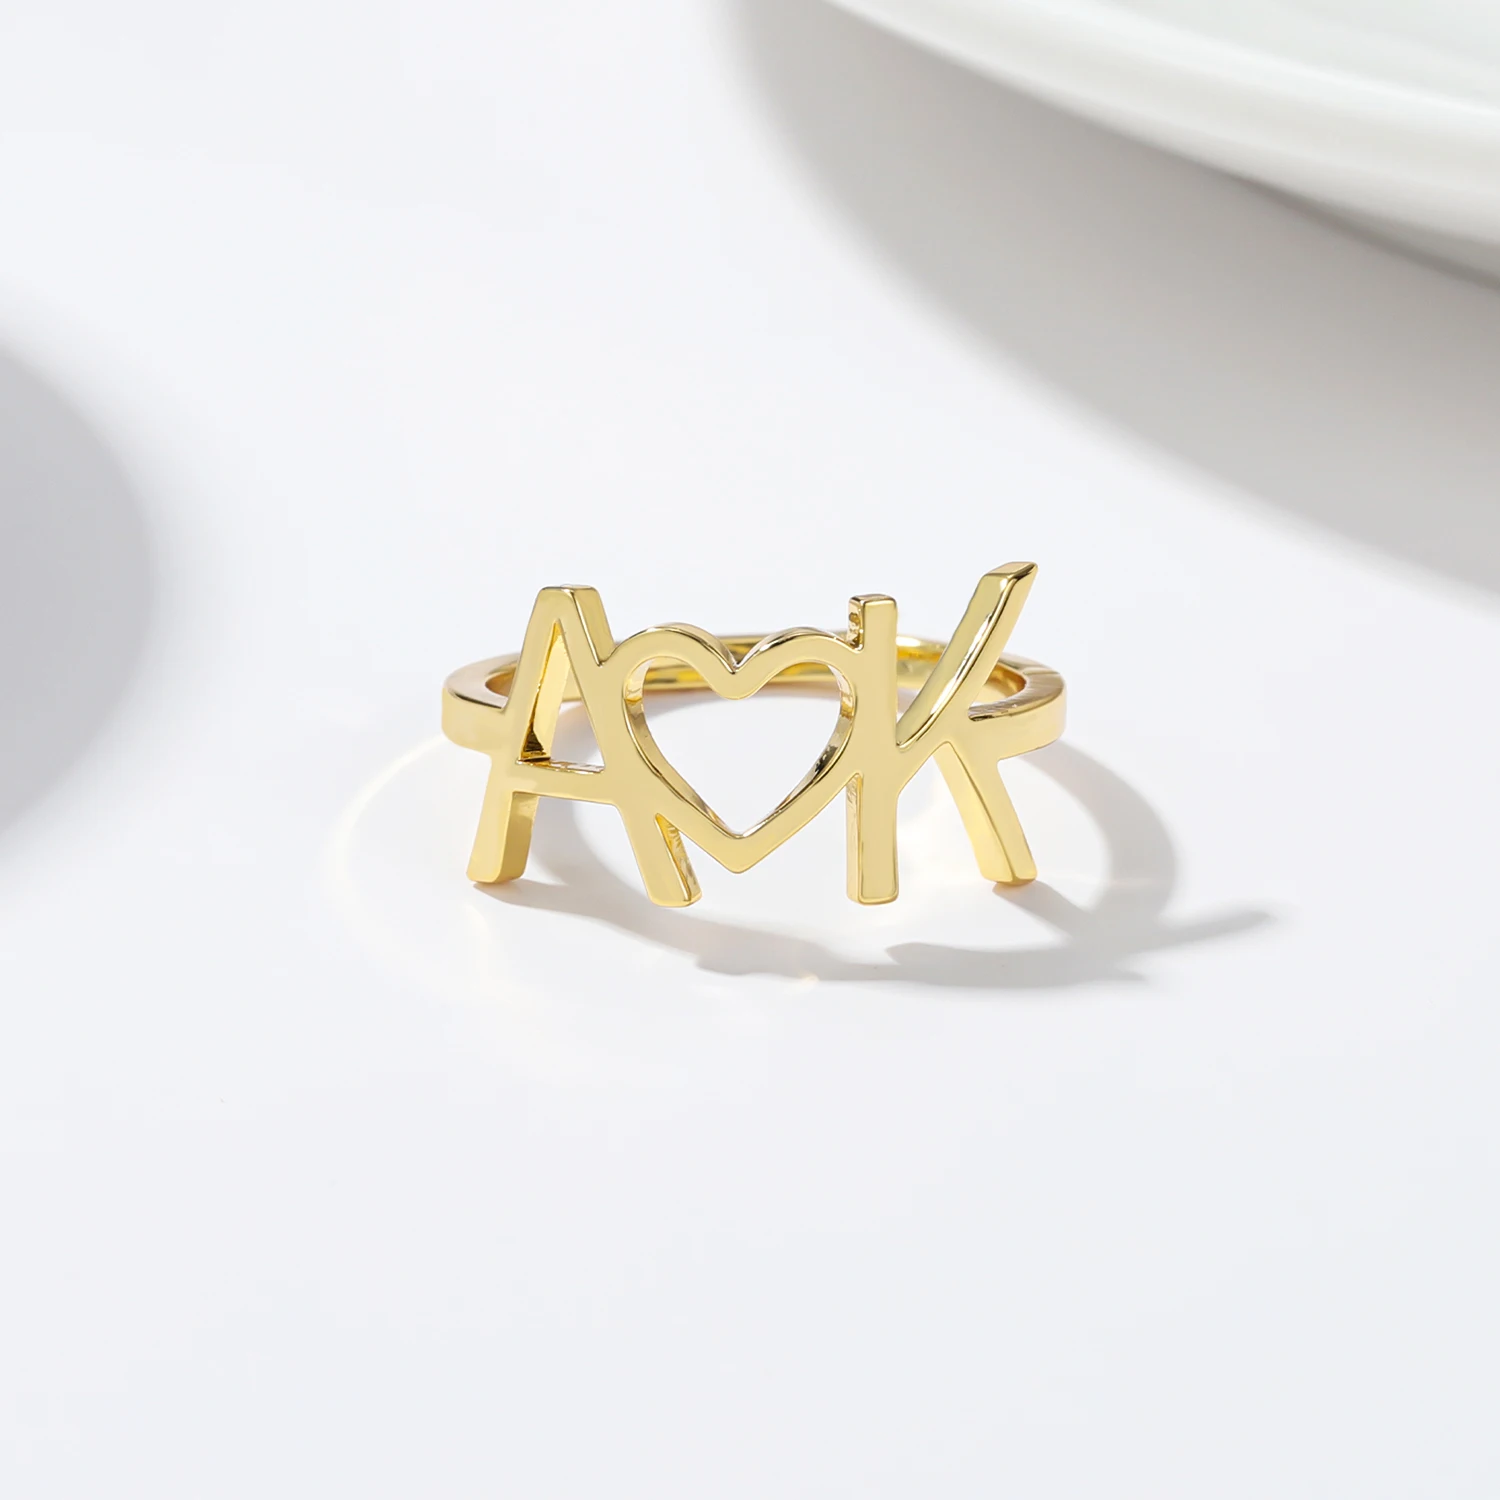 

Ювелирные изделия на День Св. Валентина, индивидуальное кольцо Unitials, индивидуальное кольцо с инициалом пары, кольцо в форме сердца, кольца из нержавеющей стали, подарок для нее